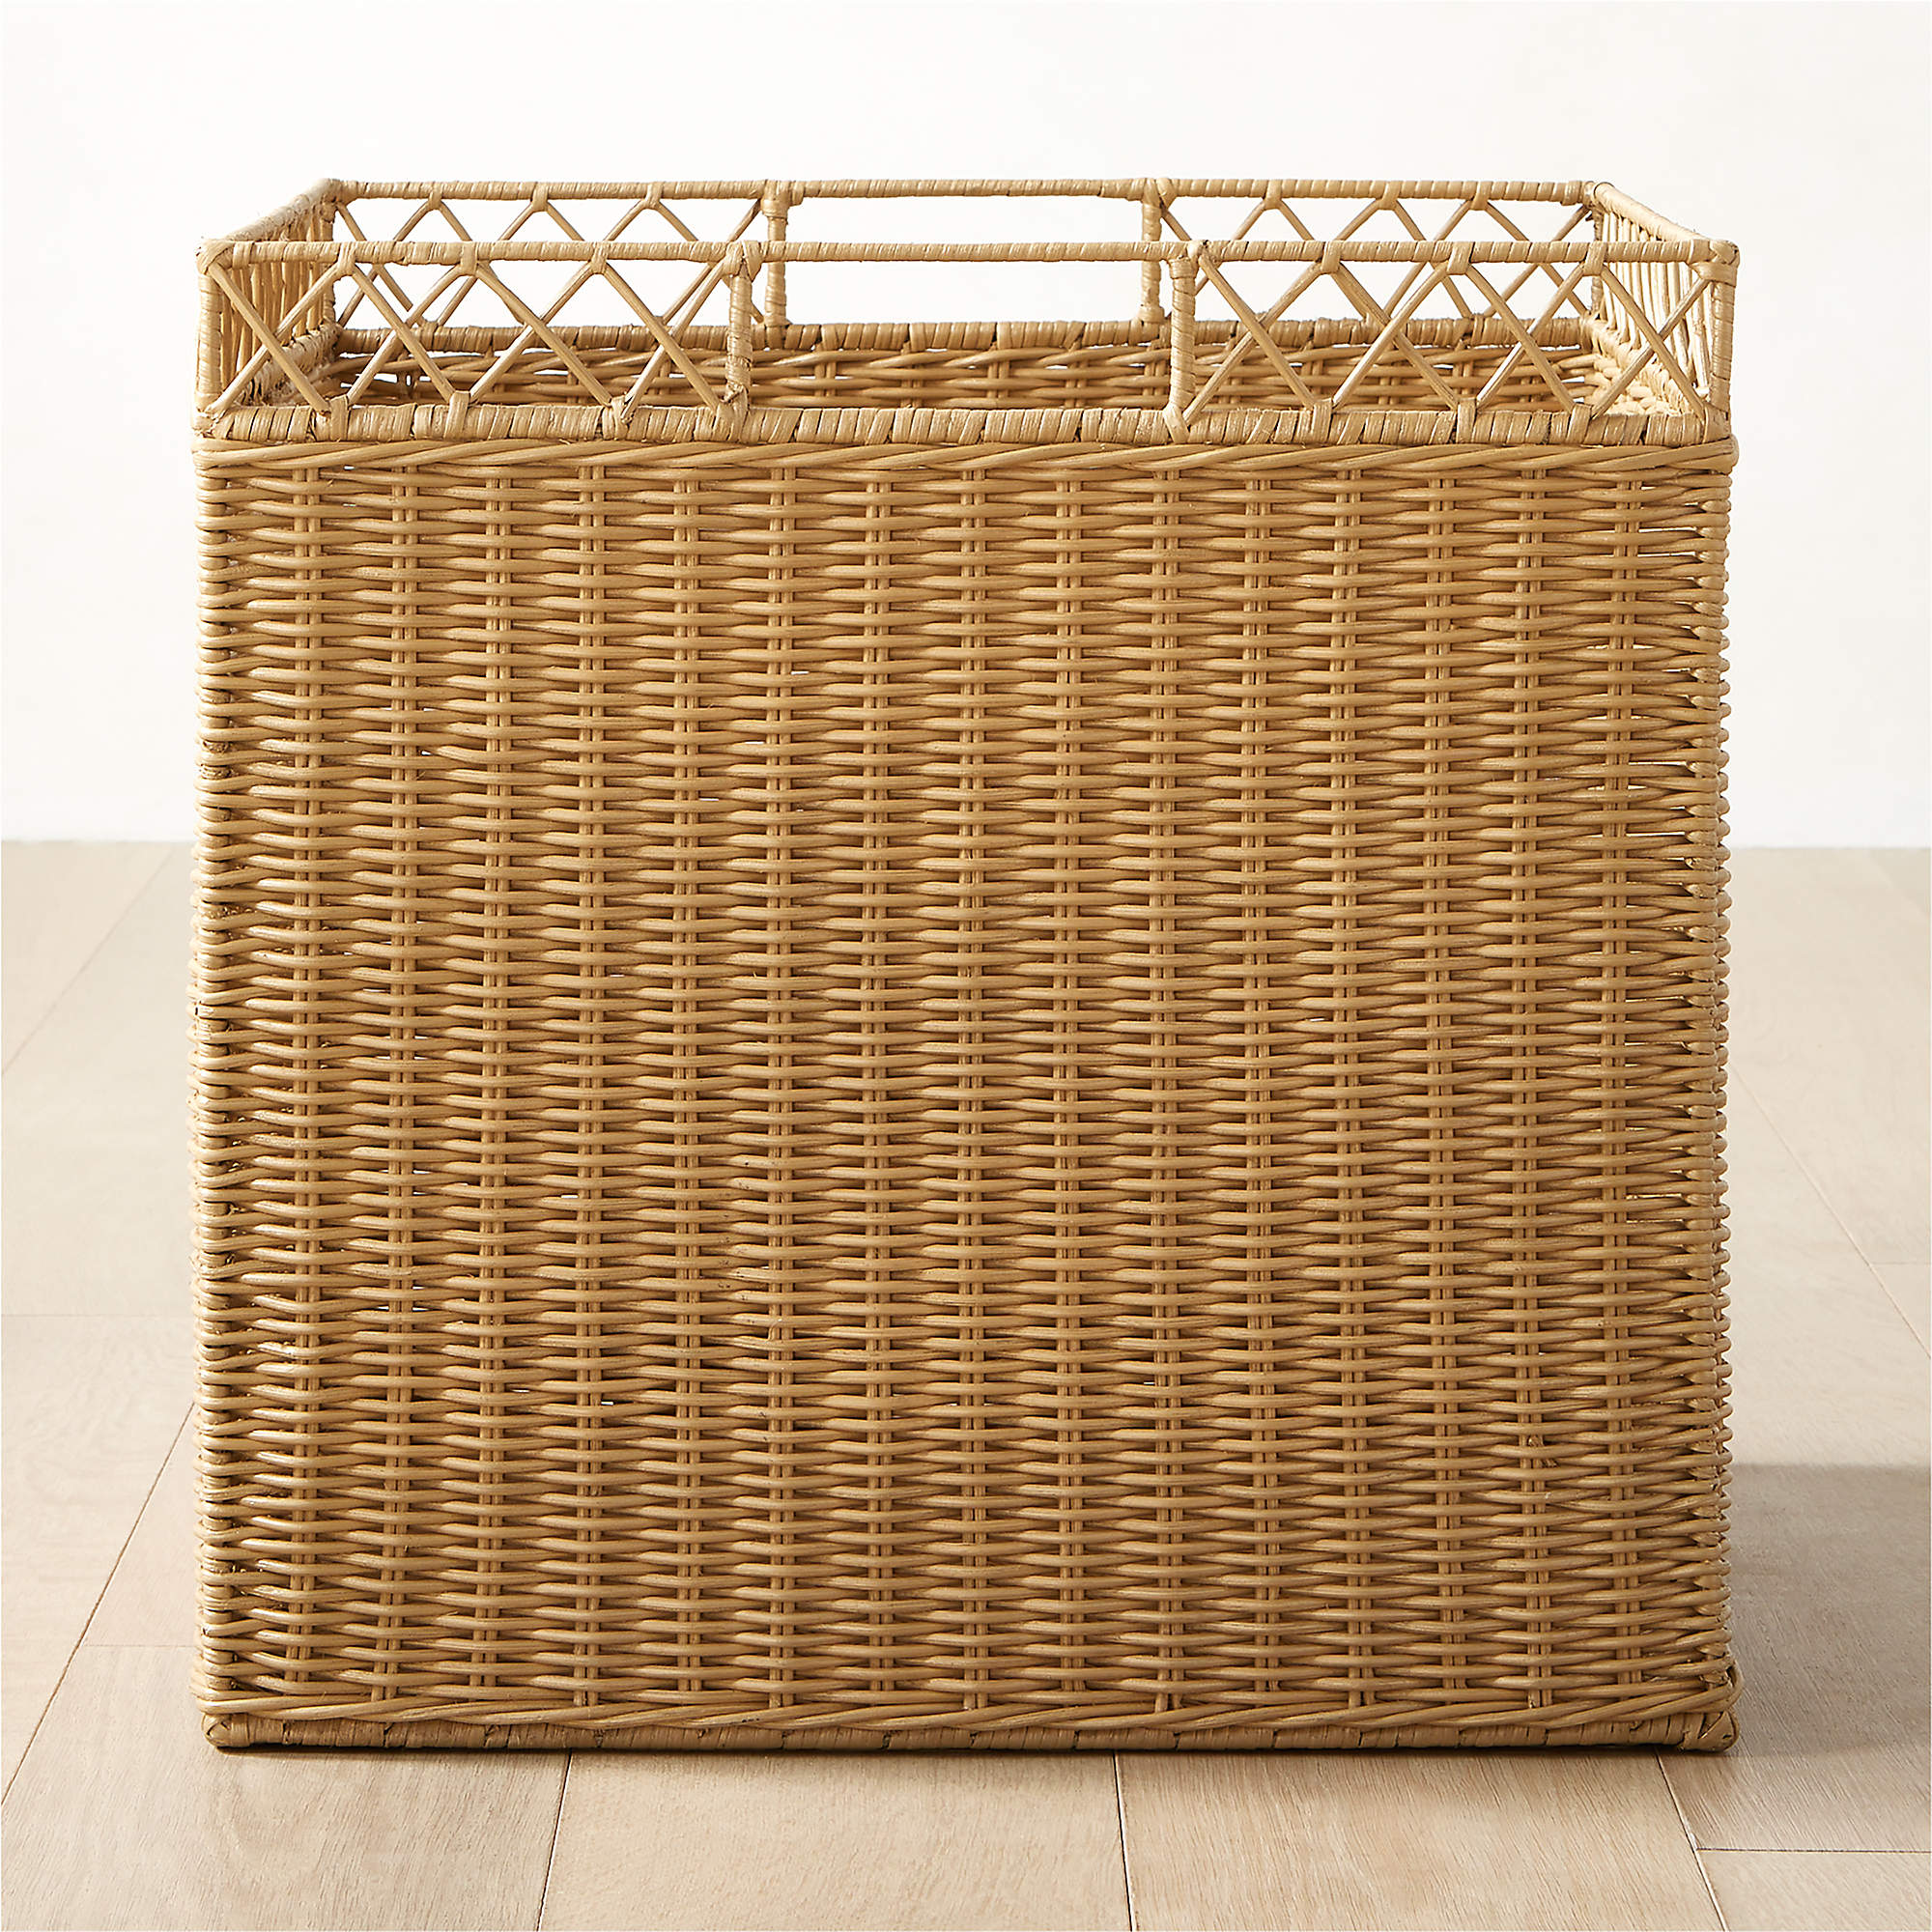 storage basket